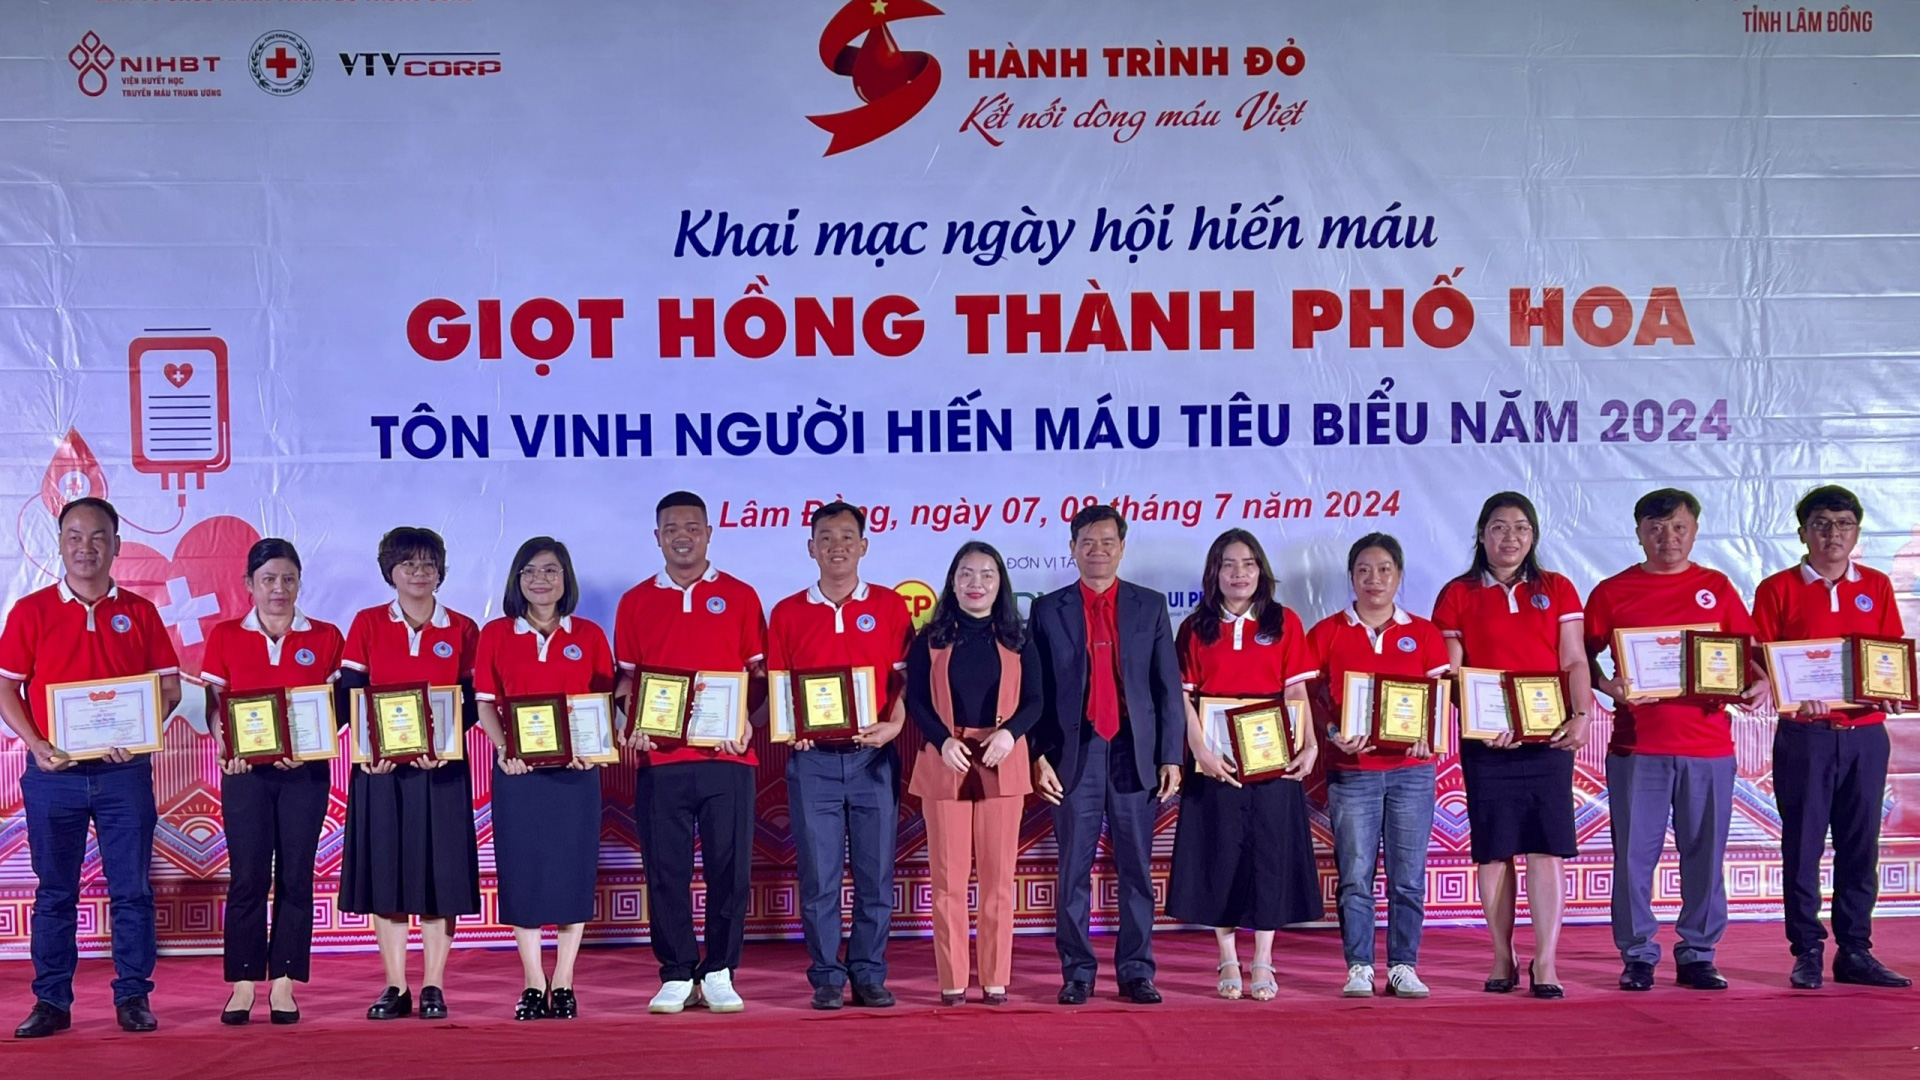 Ban Chỉ đạo Vận động Hiến máu tình nguyện tỉnh Lâm Đồng tặng Giấy khen cho các cá nhân tiêu biểu trong công tác hiến máu nhân đạo